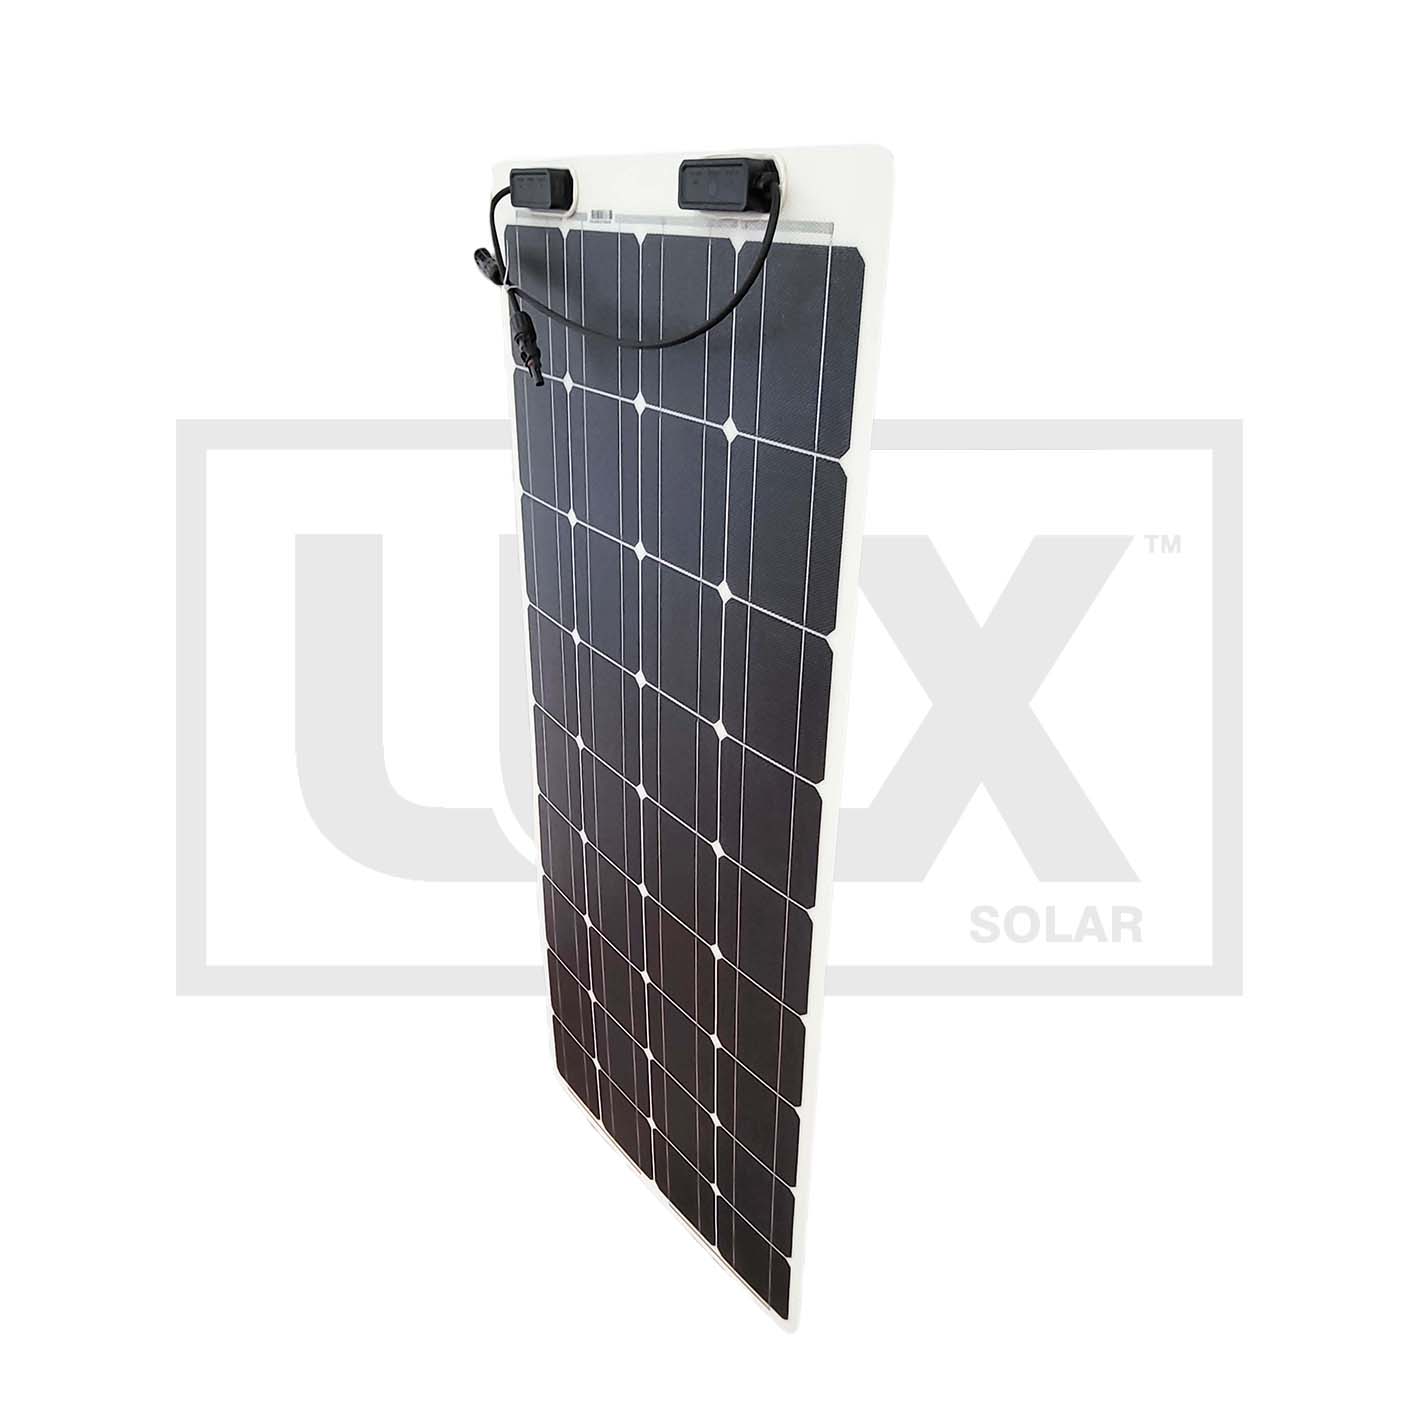 100 Watt Sunman Flexible Solar Panel  5 Year Warranty Mono EARC®